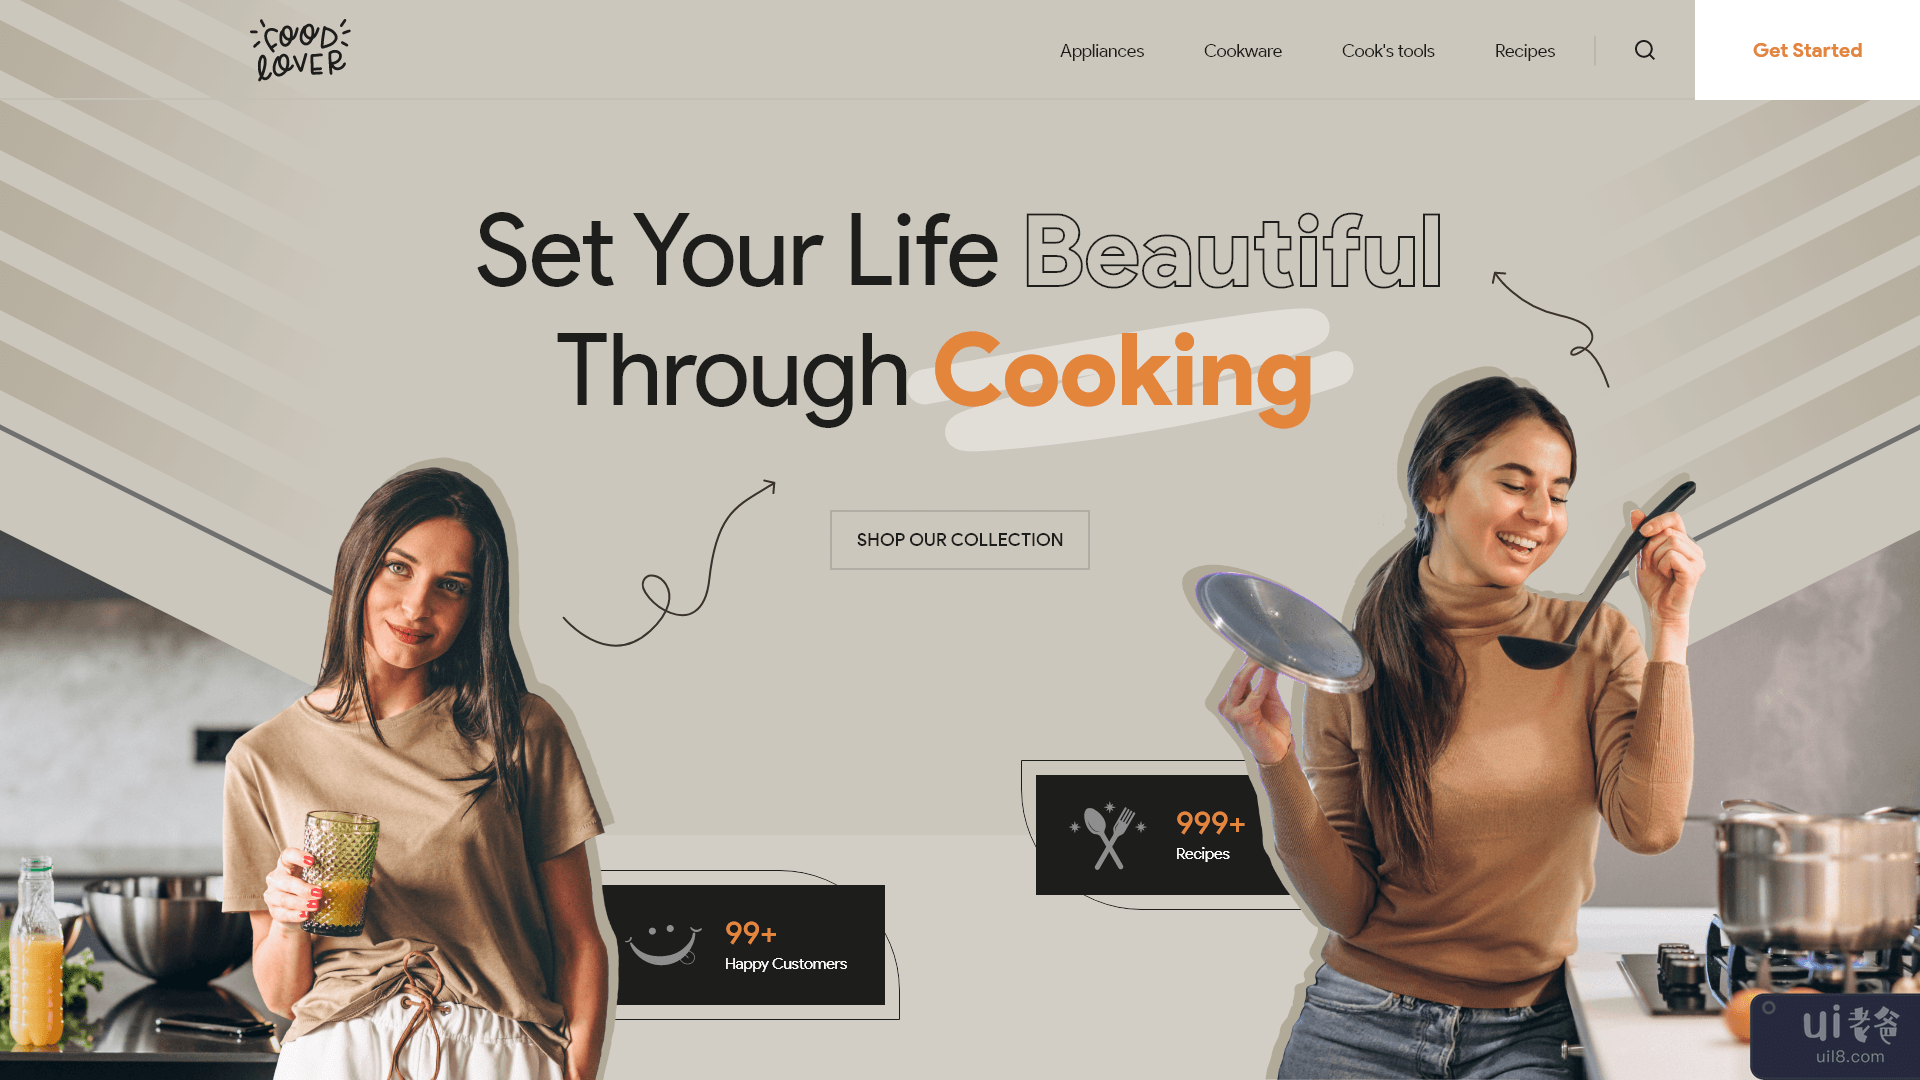 烹饪大师登陆页面(Cooking master landing page)插图